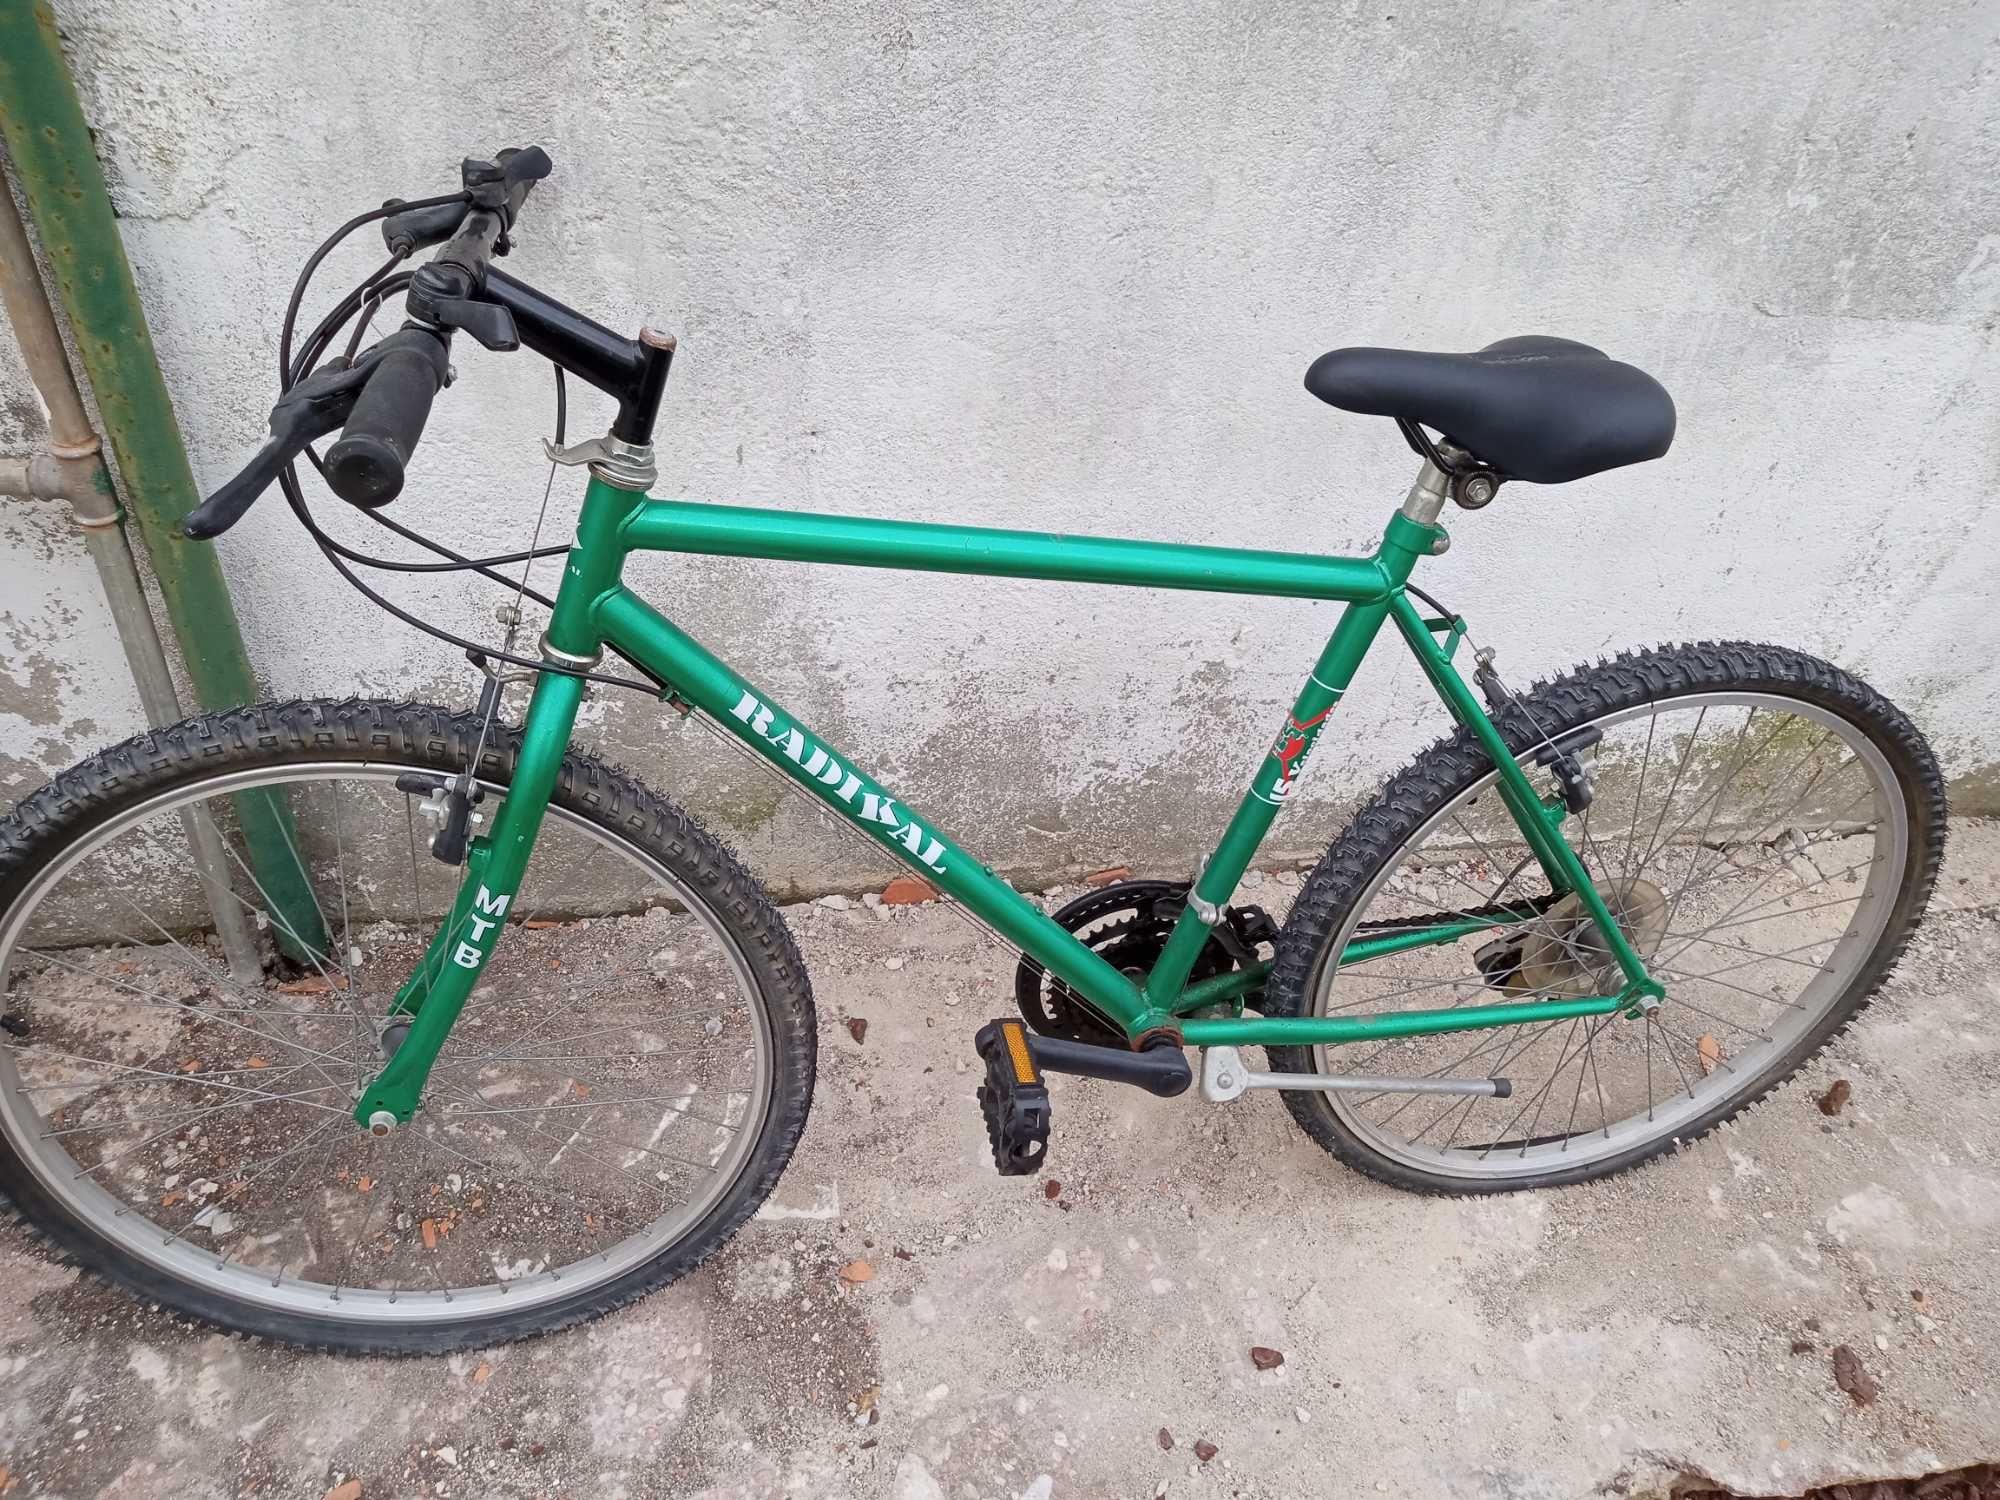 Bicicleta usada bem conservado